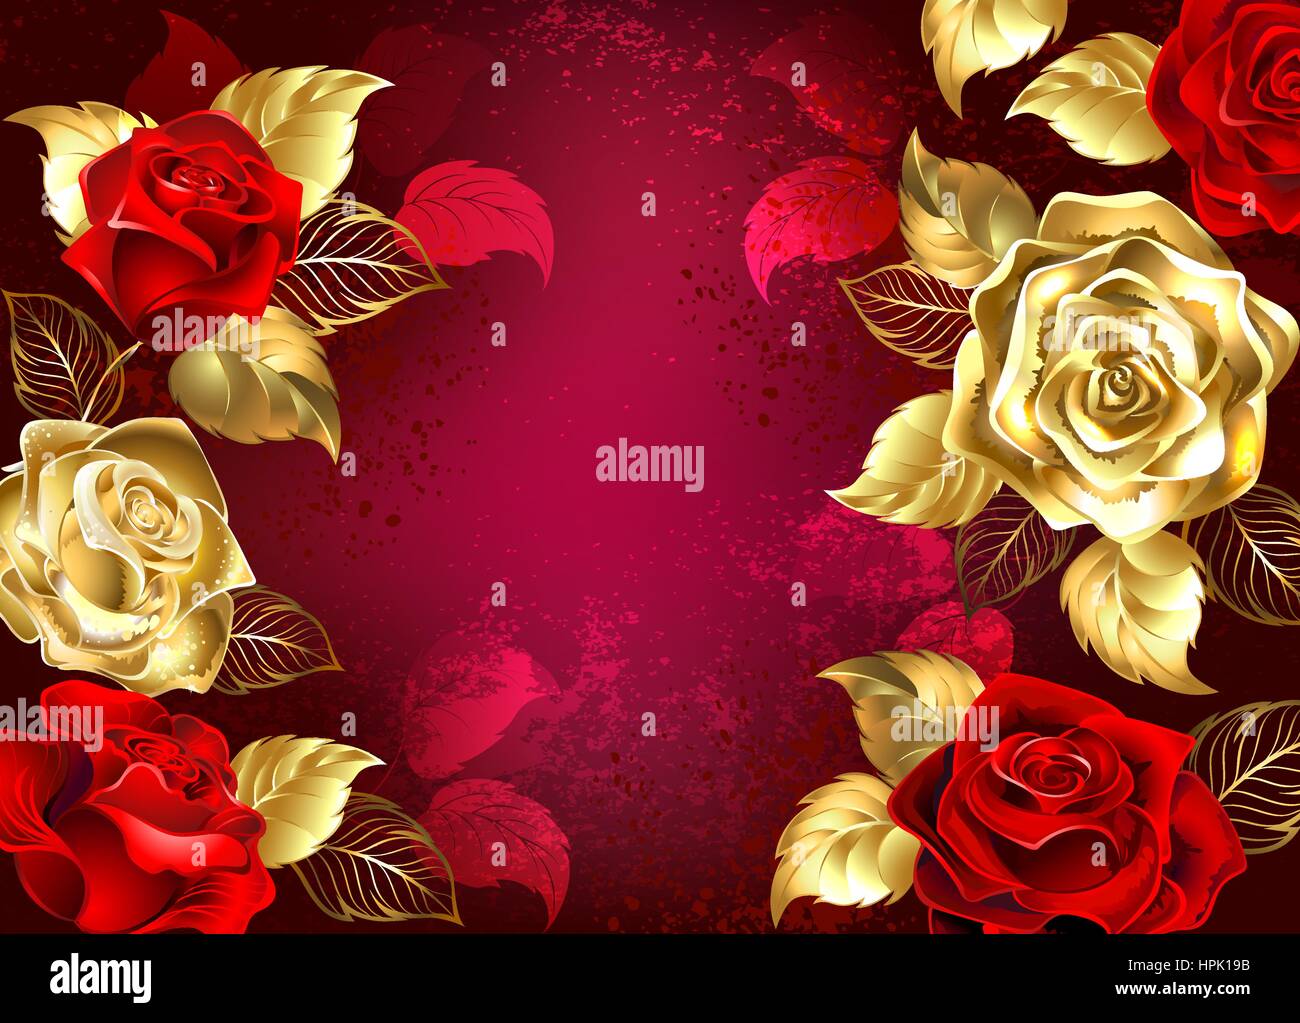 Roten strukturierten Hintergrund mit Schmuck, Gold und rot Rosen. Design mit Rosen Stock Vektor